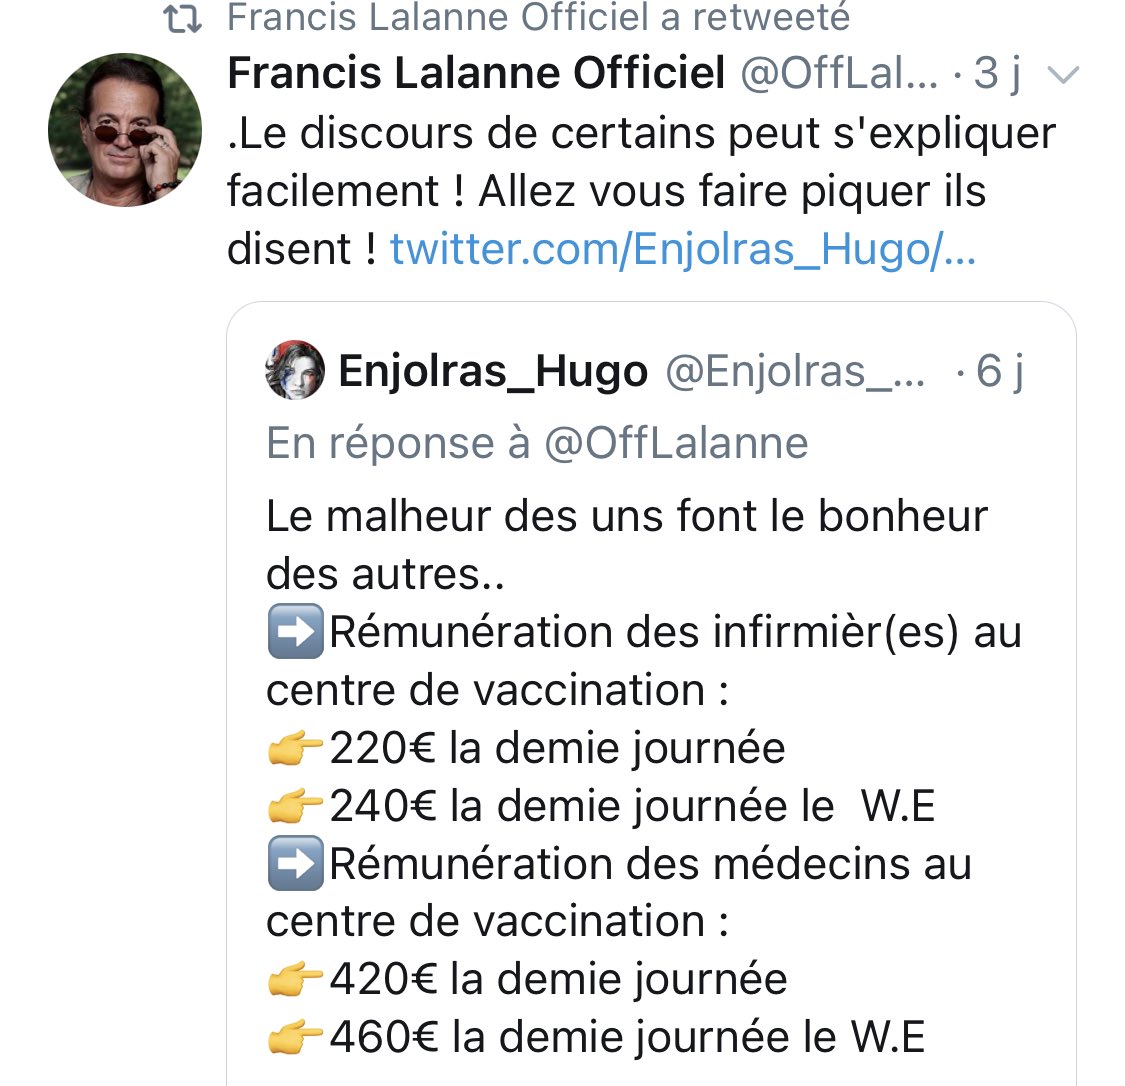 Francis Lalanne n’est pas complotiste, mais il pense que si les médecins et infirmières acceptent de participer à un génocide en connaissance de cause en vaccinant les gens, c’est parce qu’ils sont bien payés à la demi-journée au centre de vaccination.